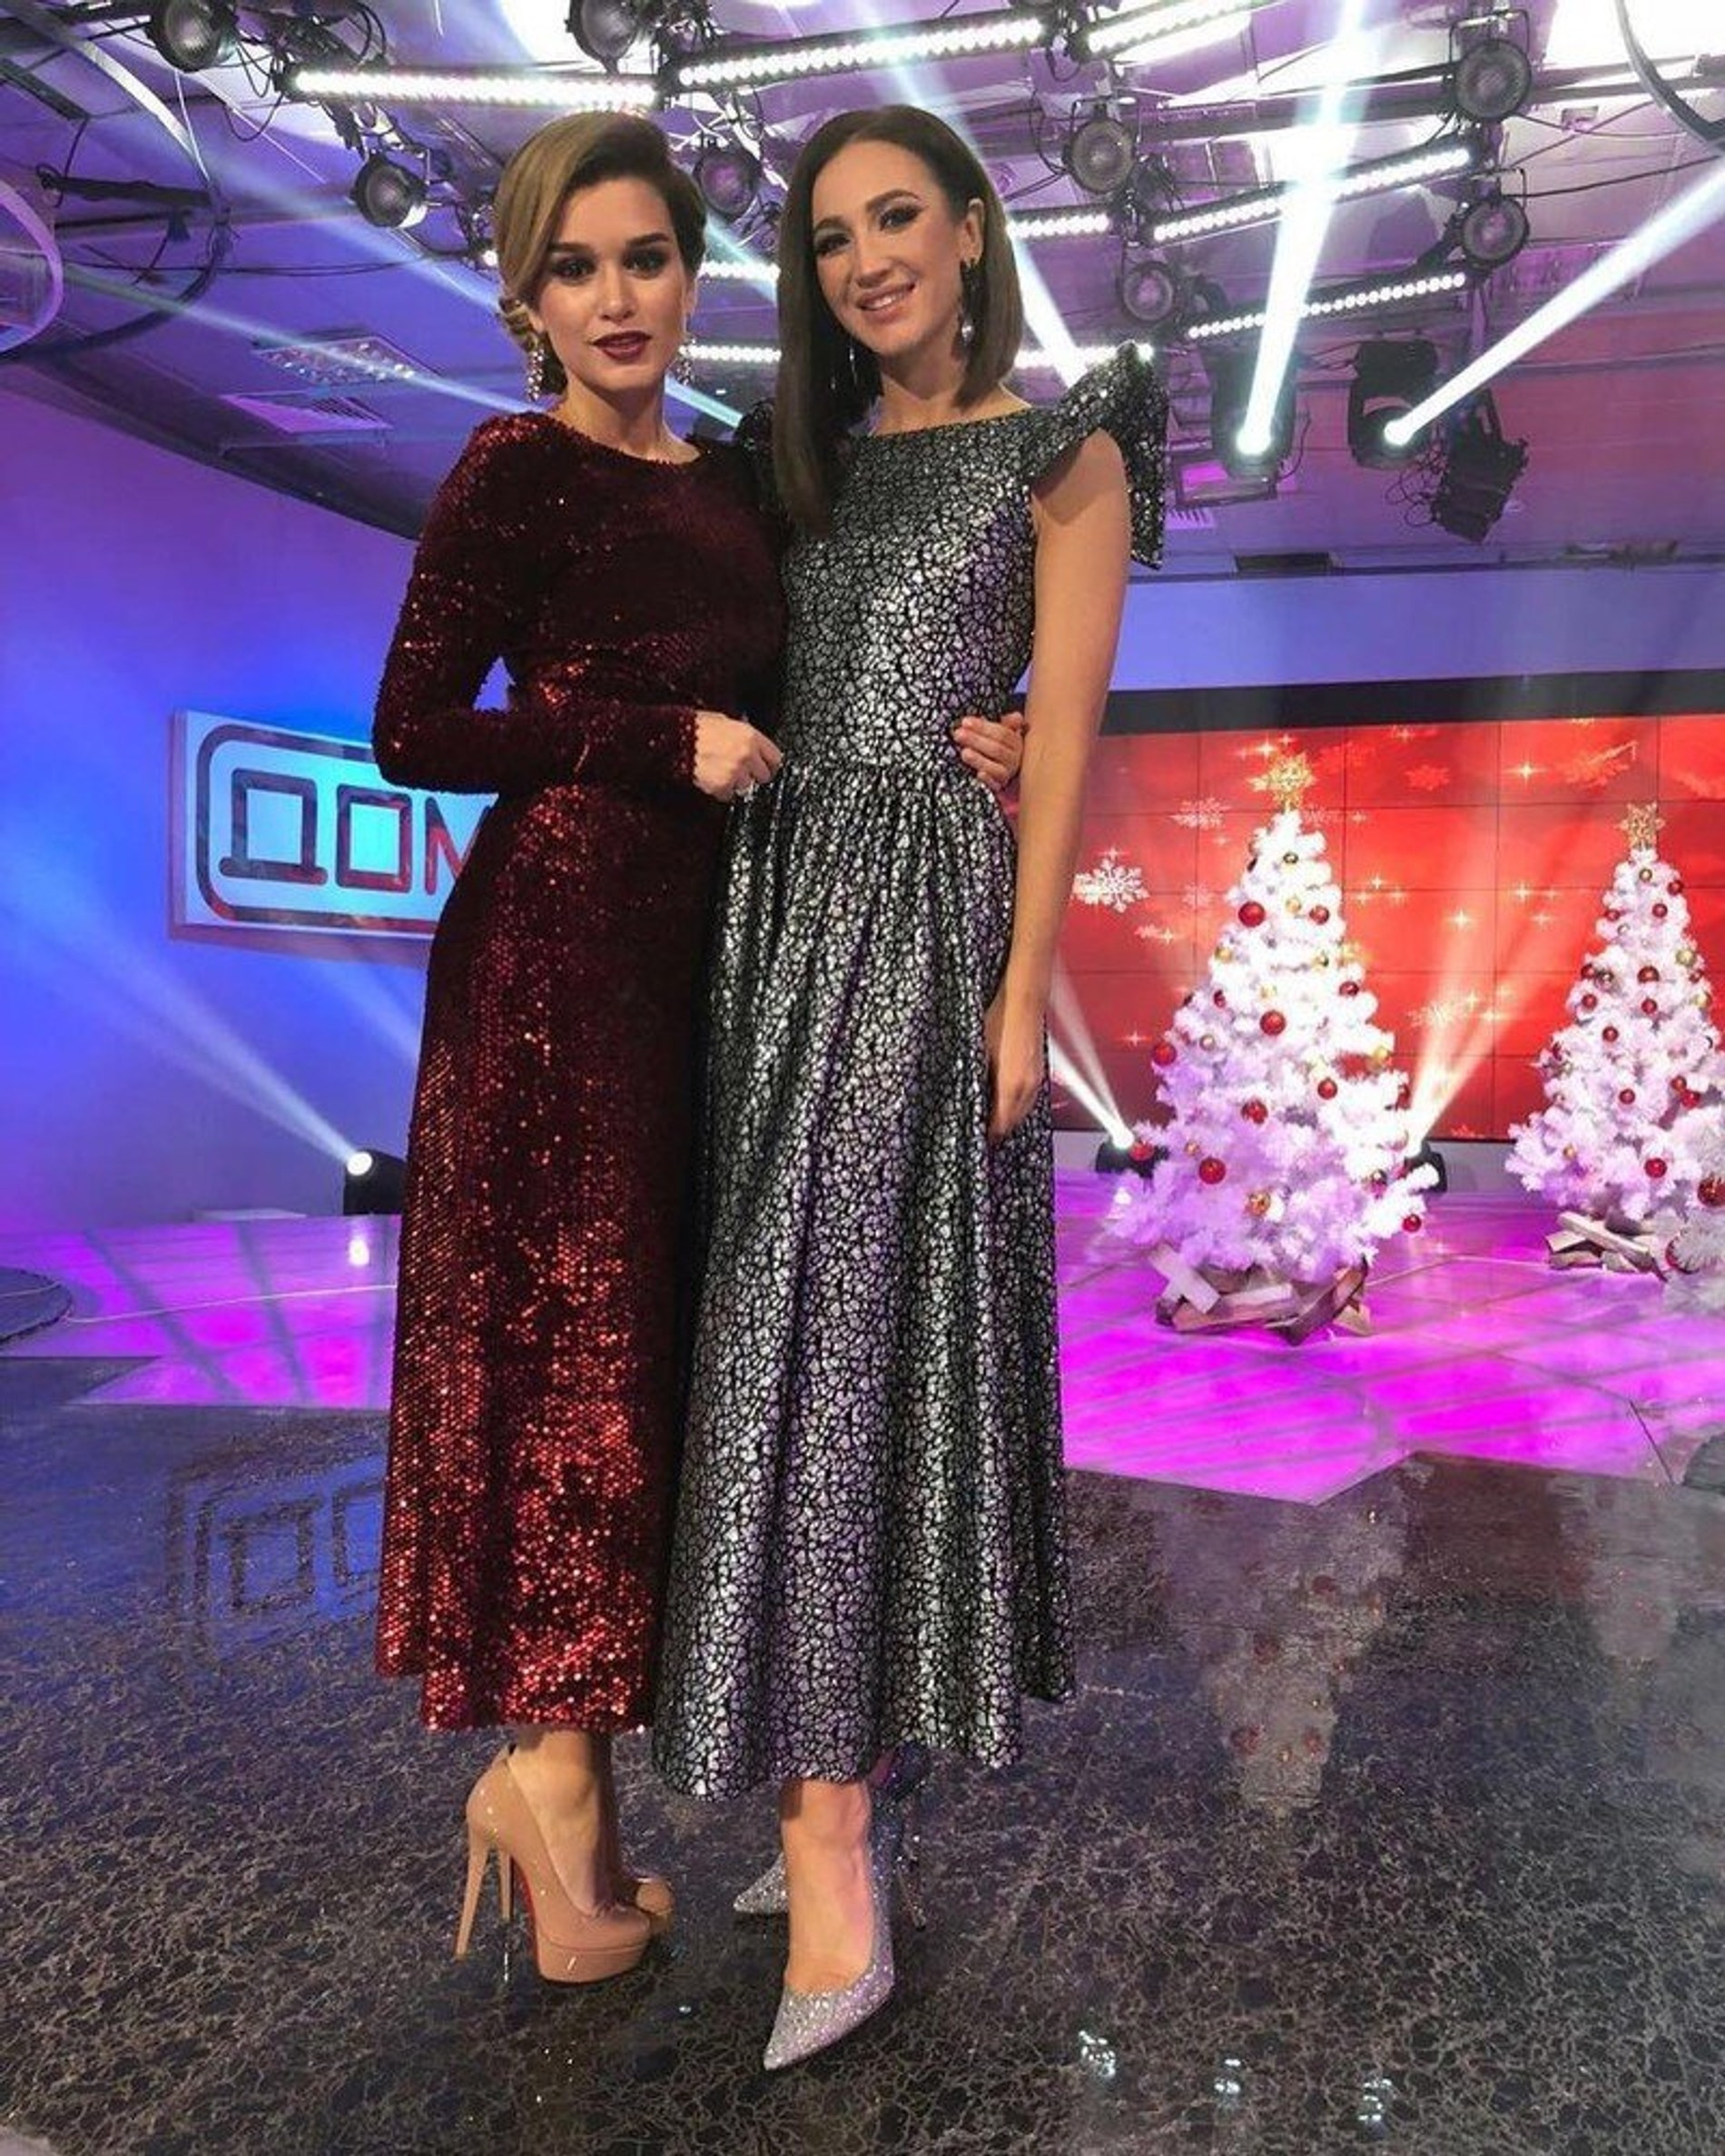 Ольга Бузова и Ксения Бородина.
Фото © Instagram